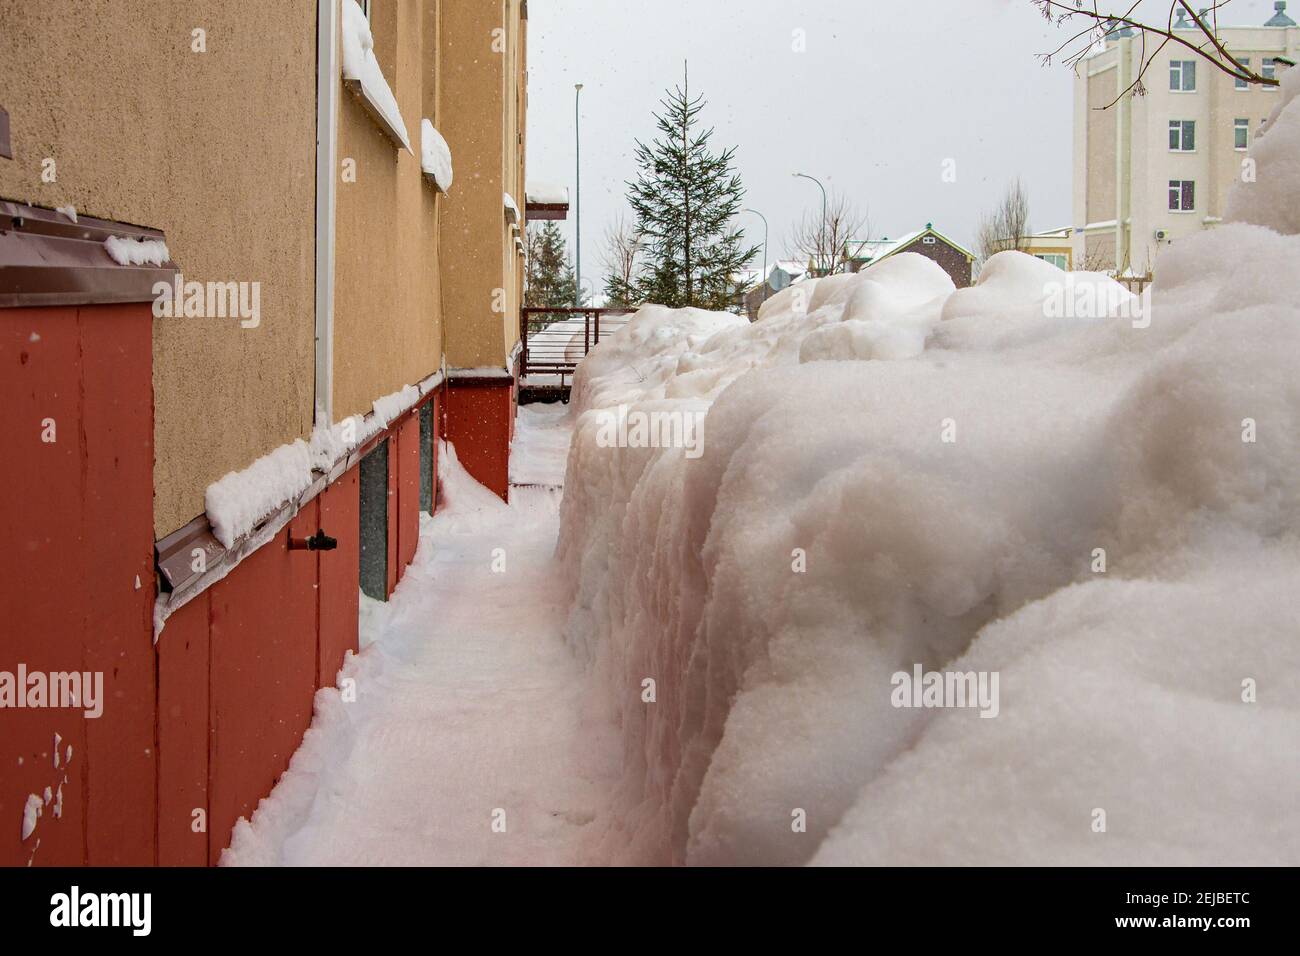 creuser les murs des maisons de la neige au printemps, à la fin de l'hiver Banque D'Images